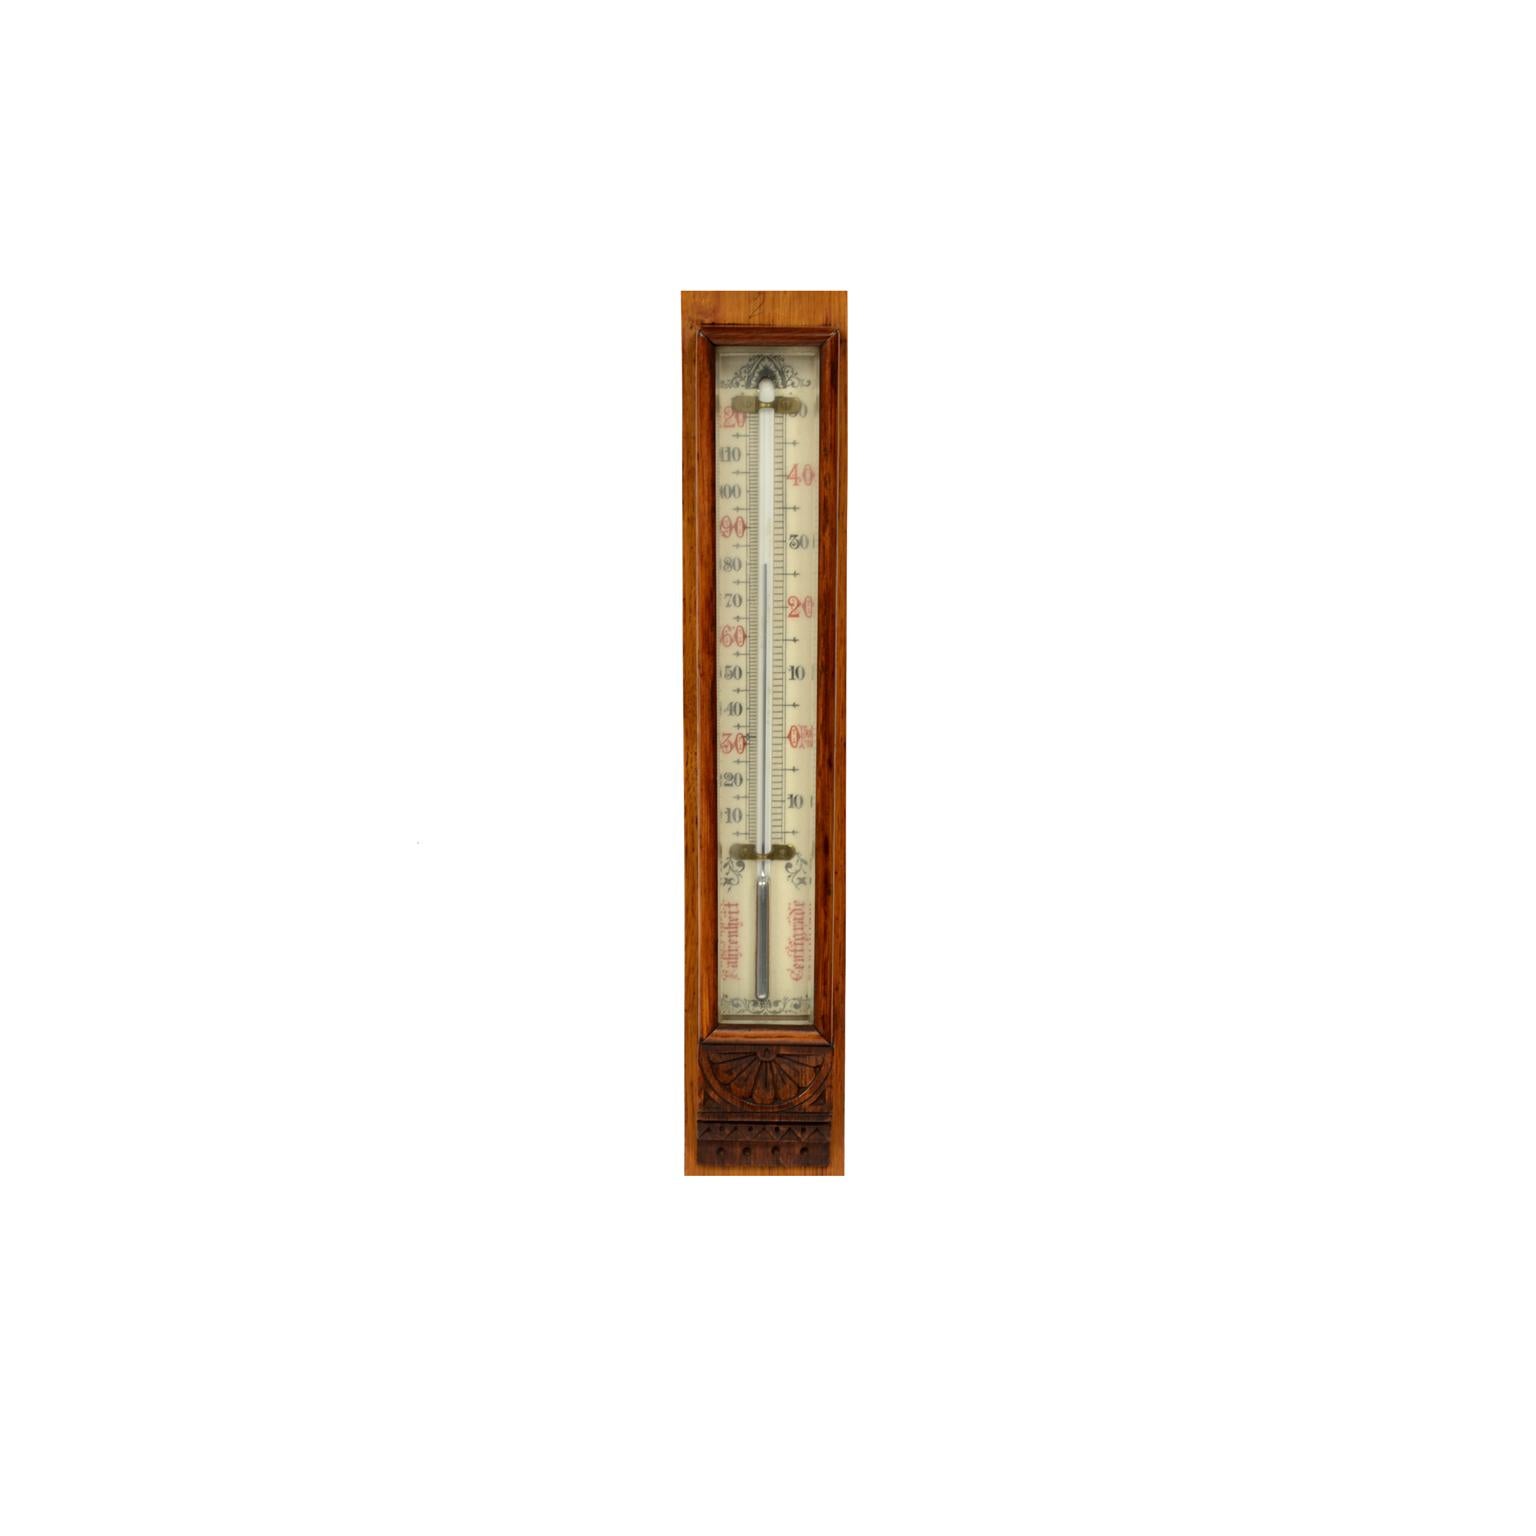 Baromètre et thermomètre de la fin du 19e siècle de J. H. Stewar, modèle météorologique ancien en vente 11